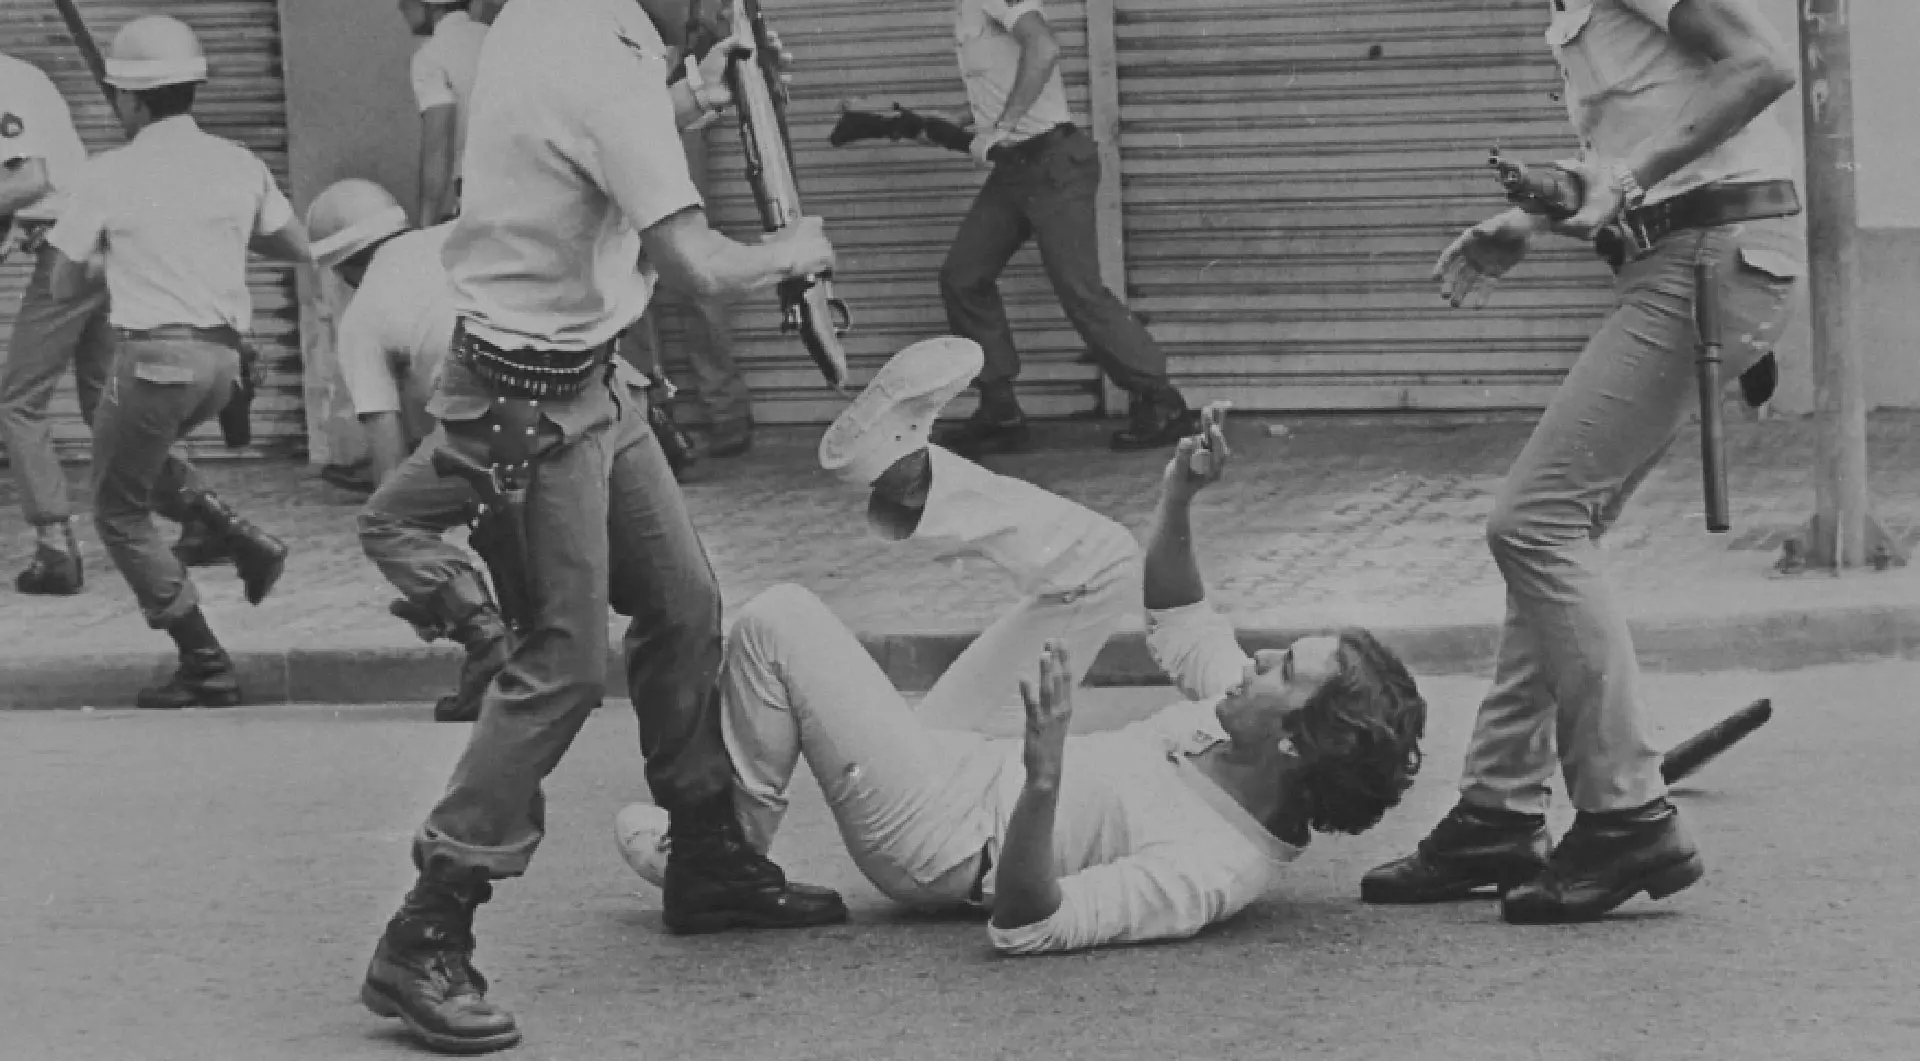 Homem caído no chão está com os braços estendidos para se proteger do golpe de um militar que está prestes a agredi-lo